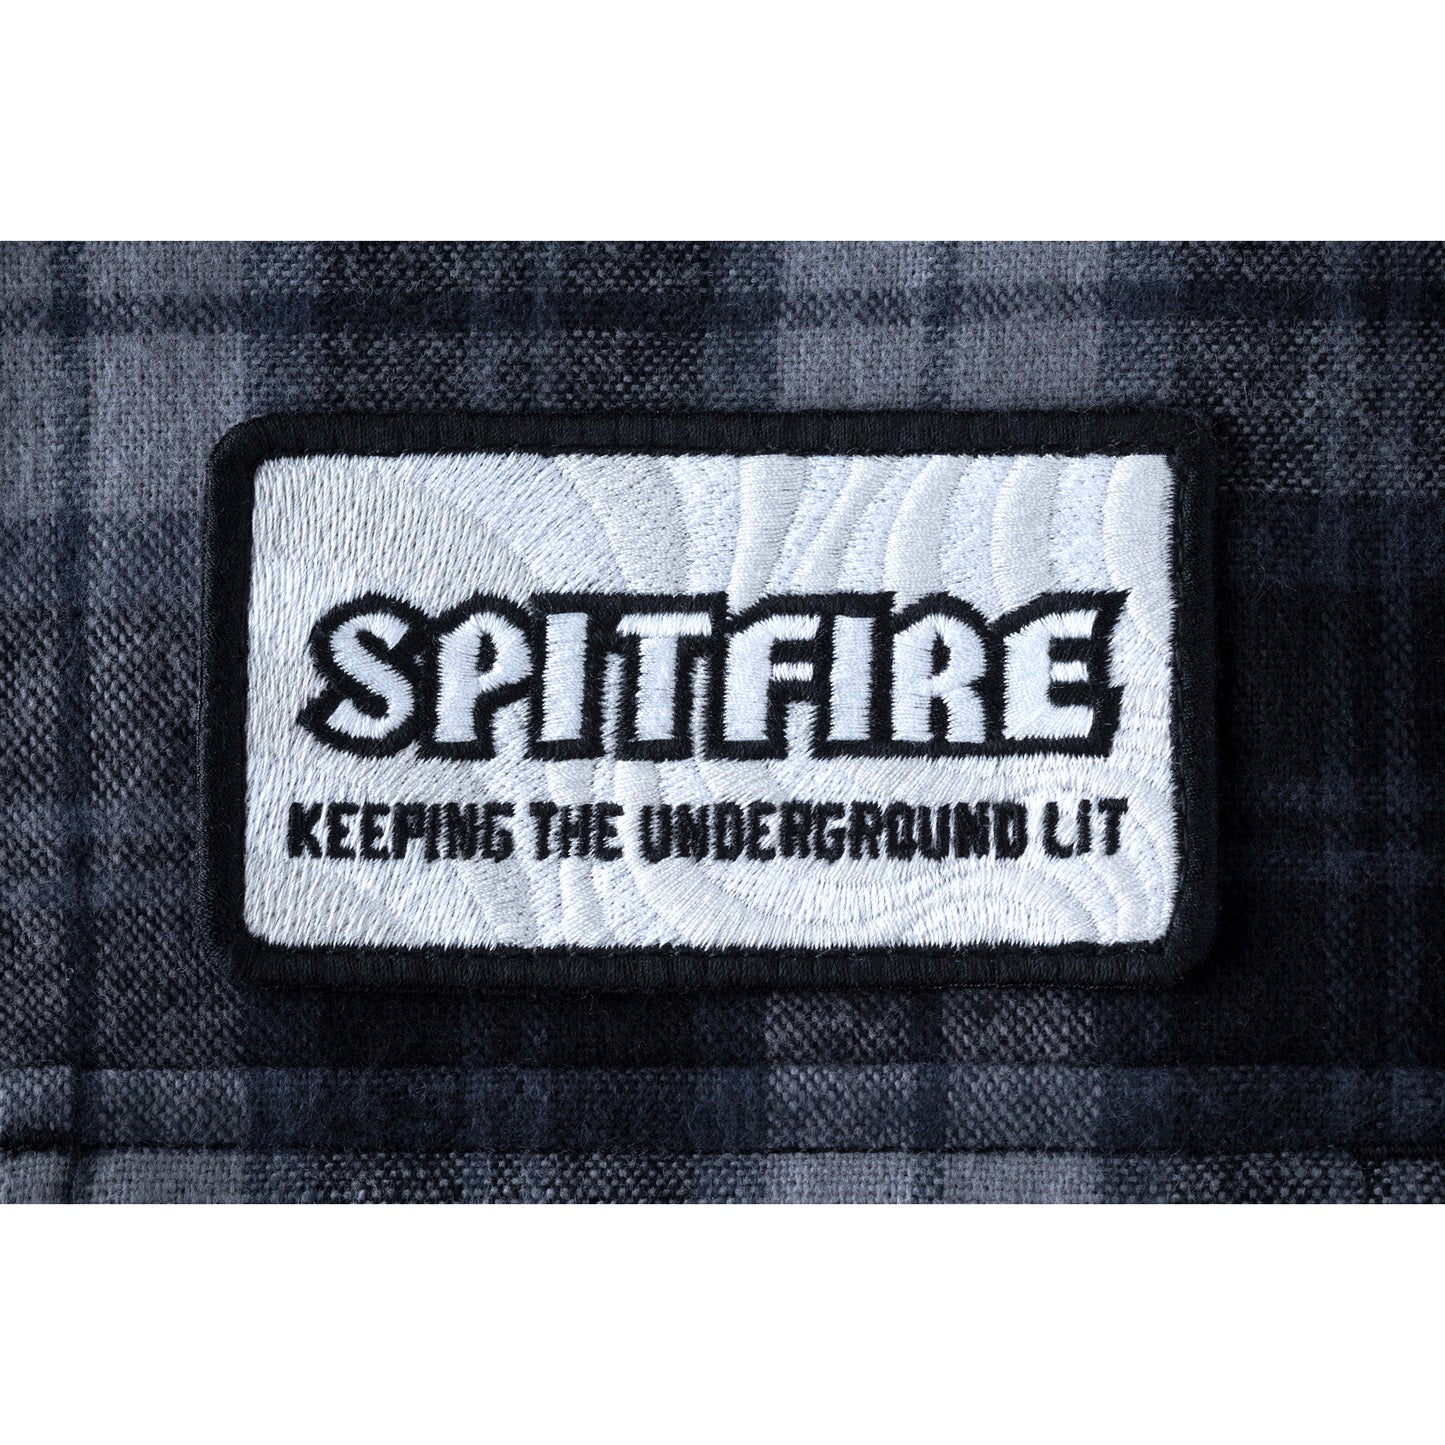 HUF x Spitfire L/S Men's Flannel Shirt, Black